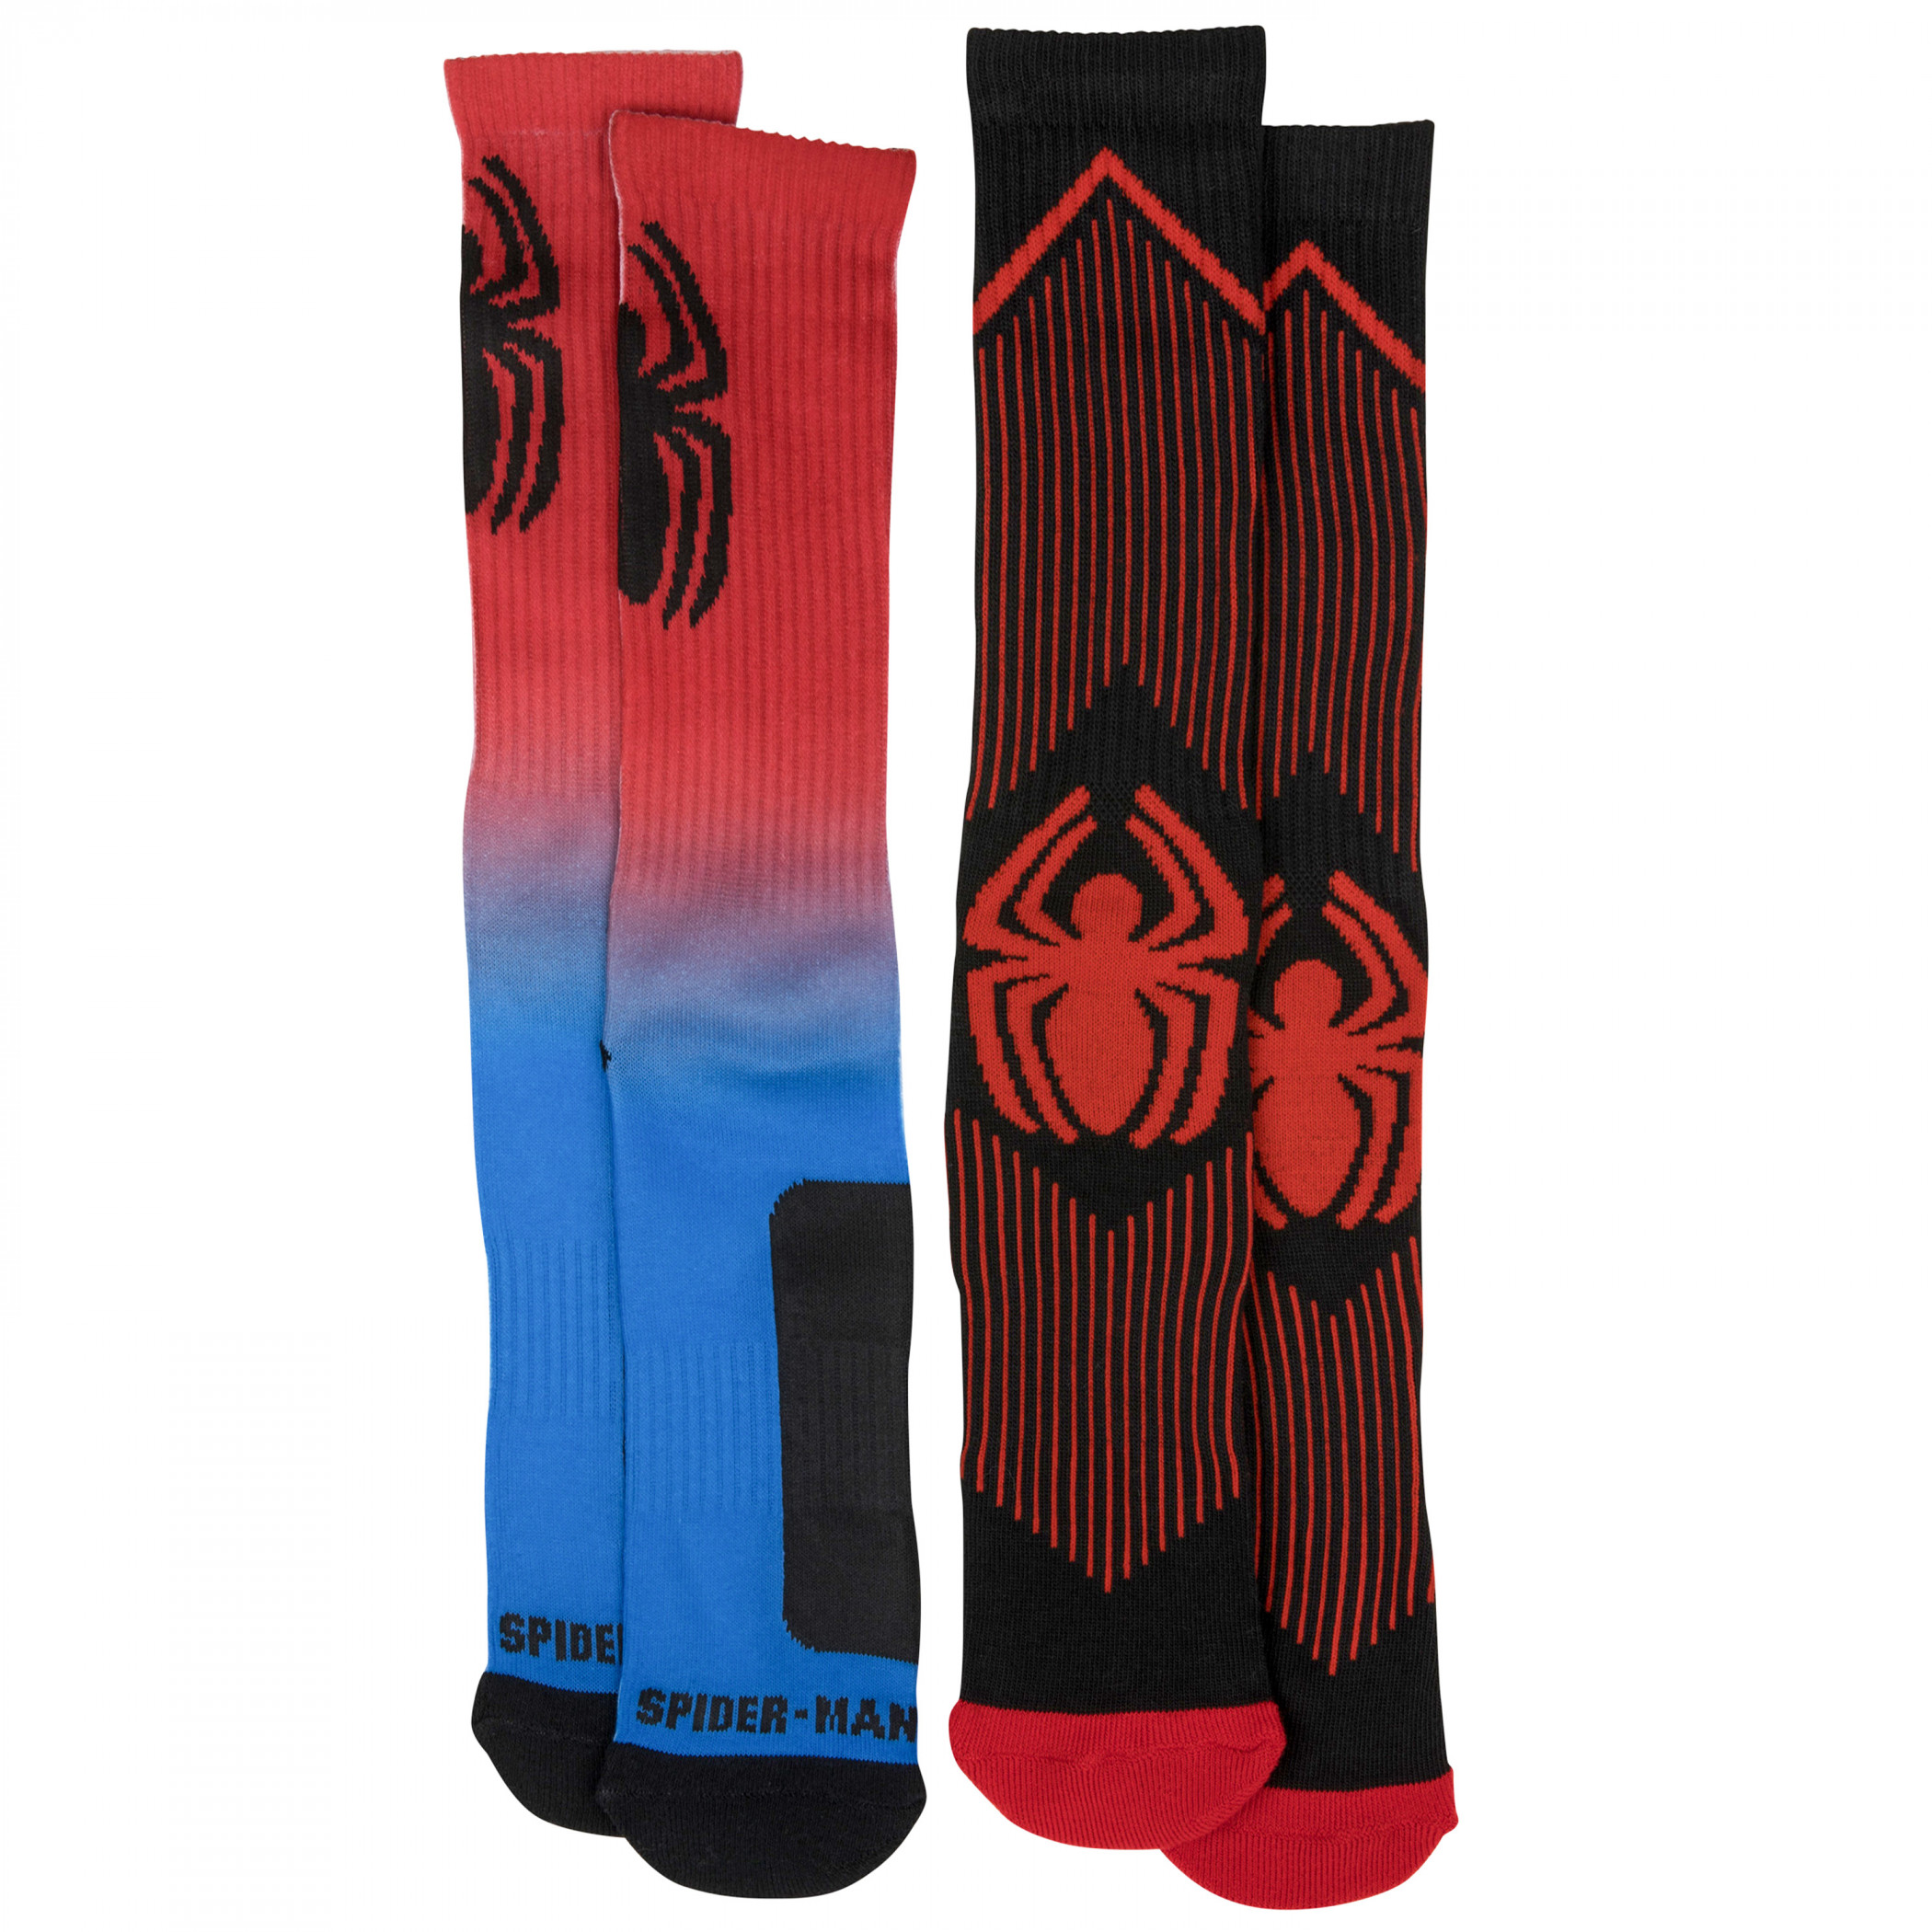 Spider-Man Dark Neon 2-Pair Pack of Athletic Socks